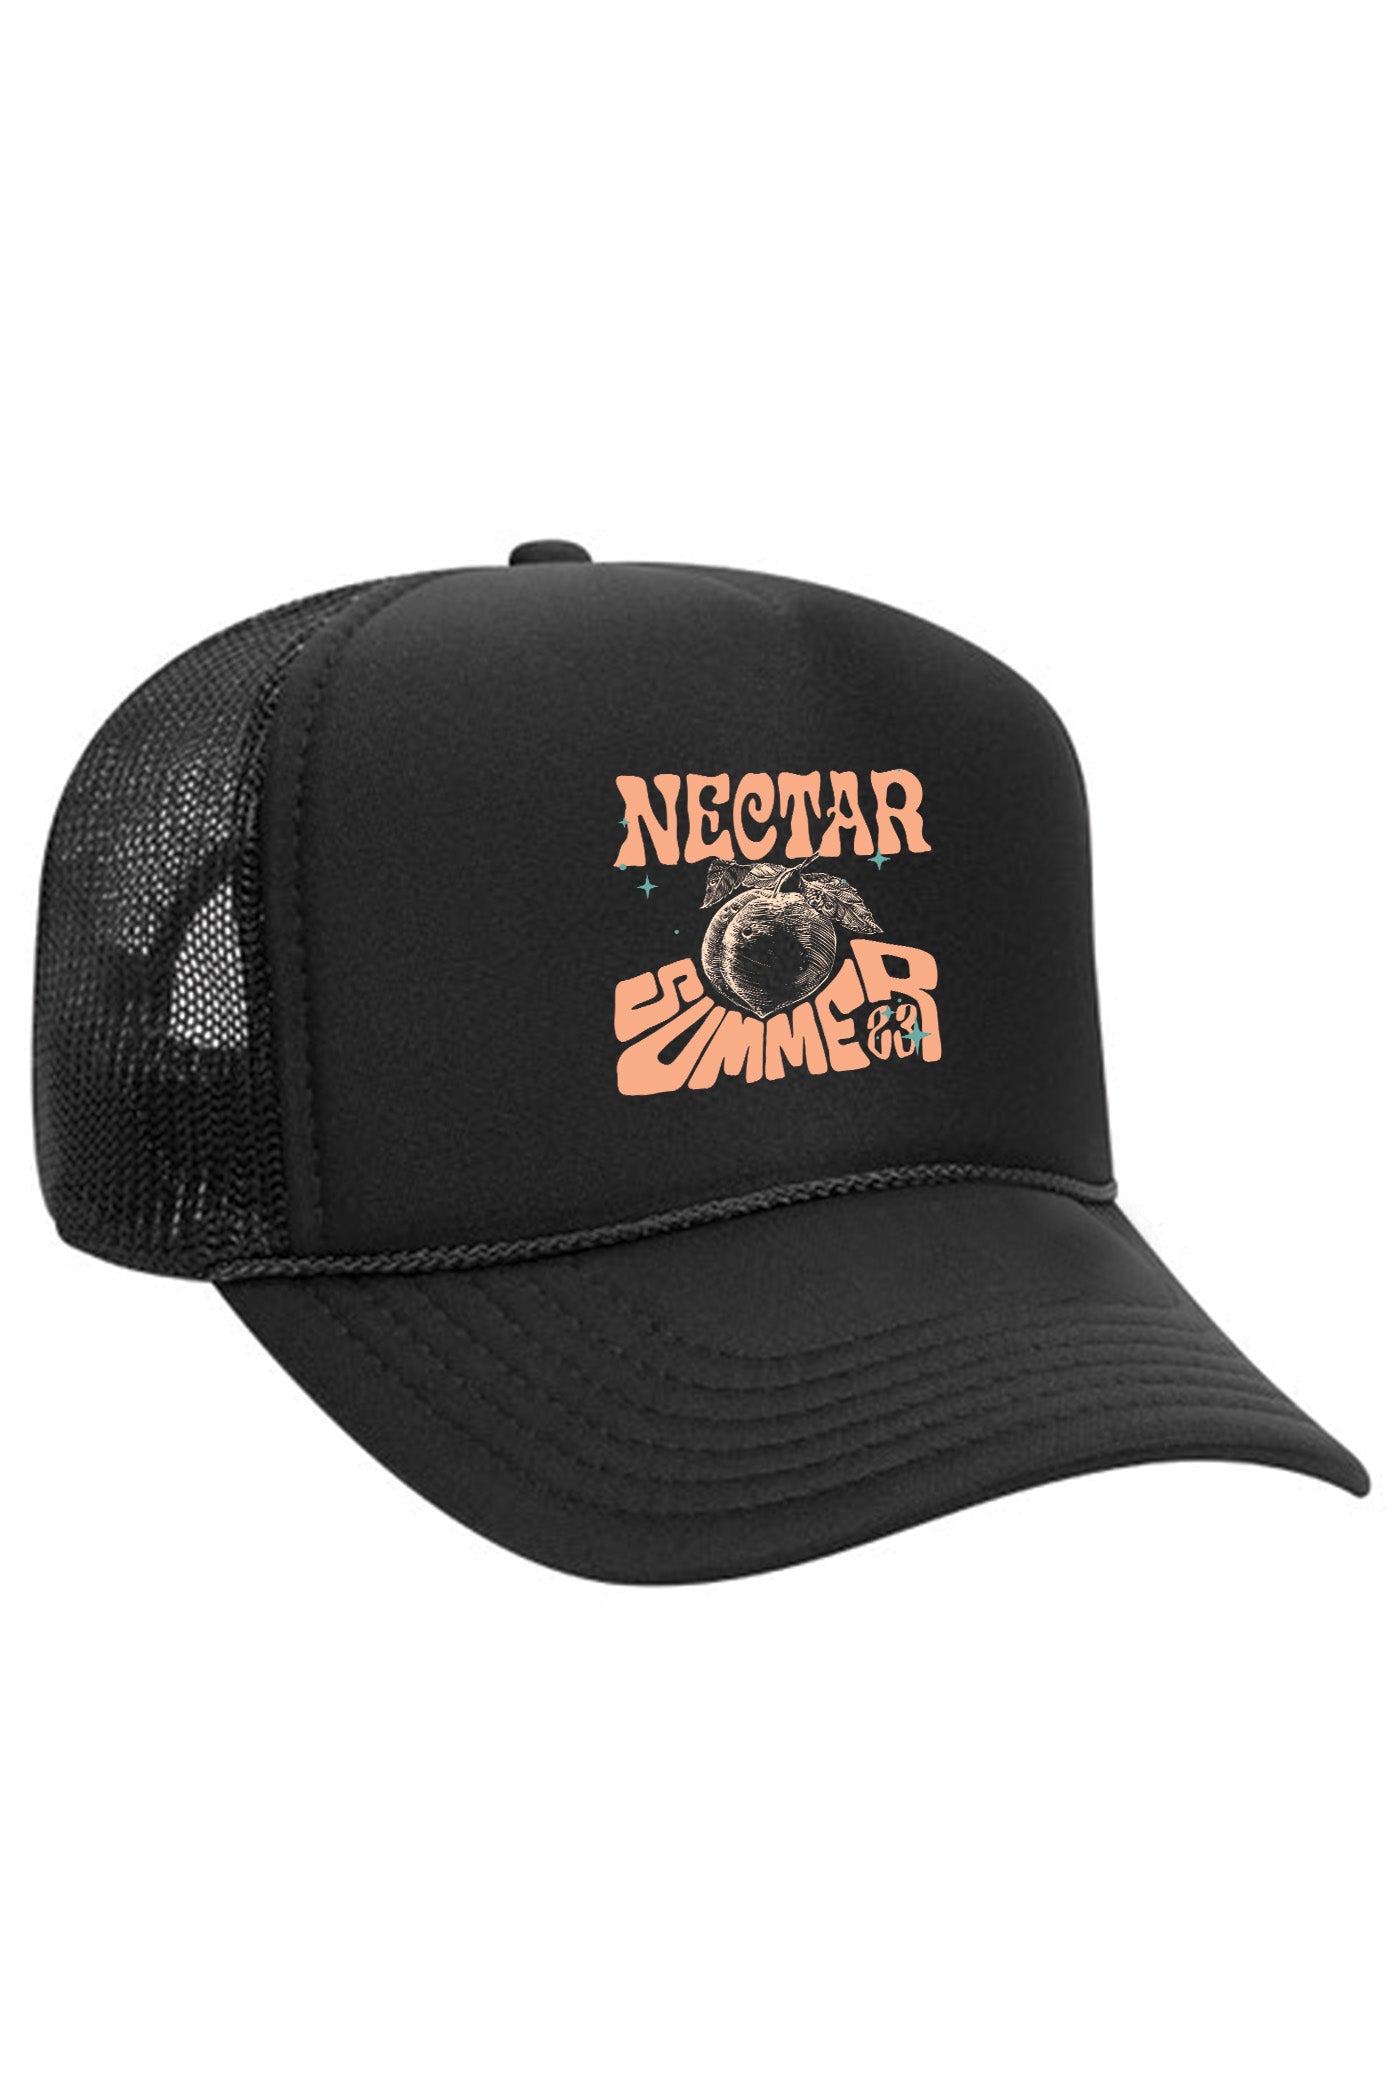 Nectar Trucker Hat